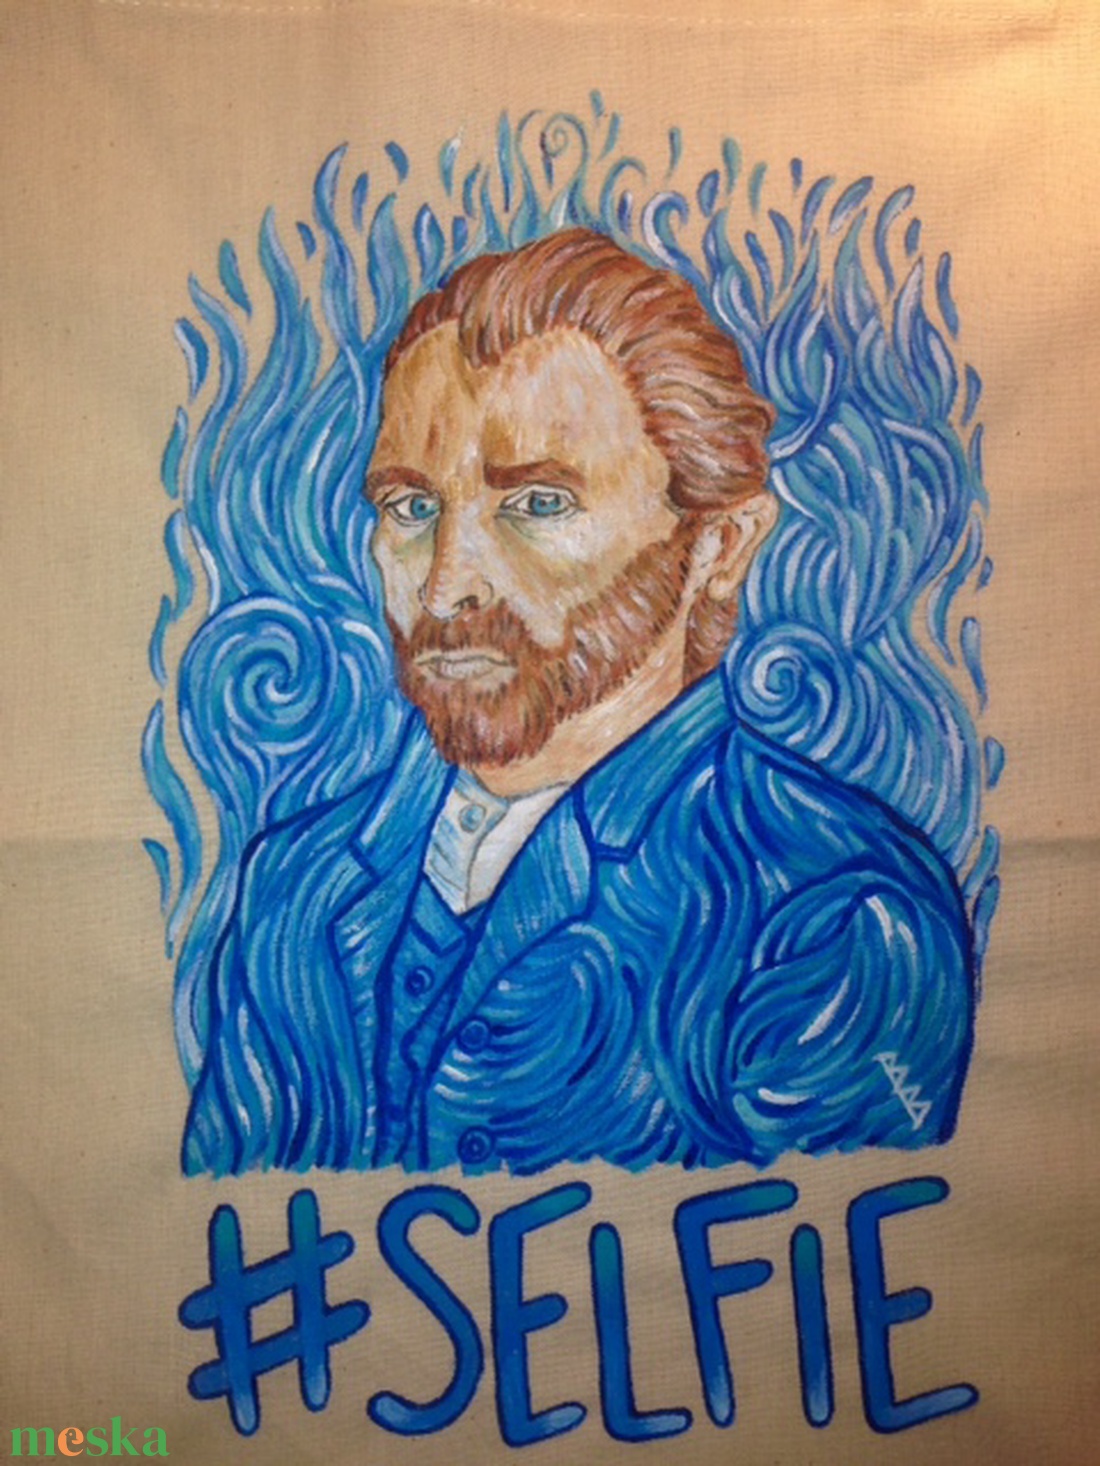 Van Gogh selfis tatyó - táska & tok - bevásárlás & shopper táska - shopper, textiltáska, szatyor - Meska.hu